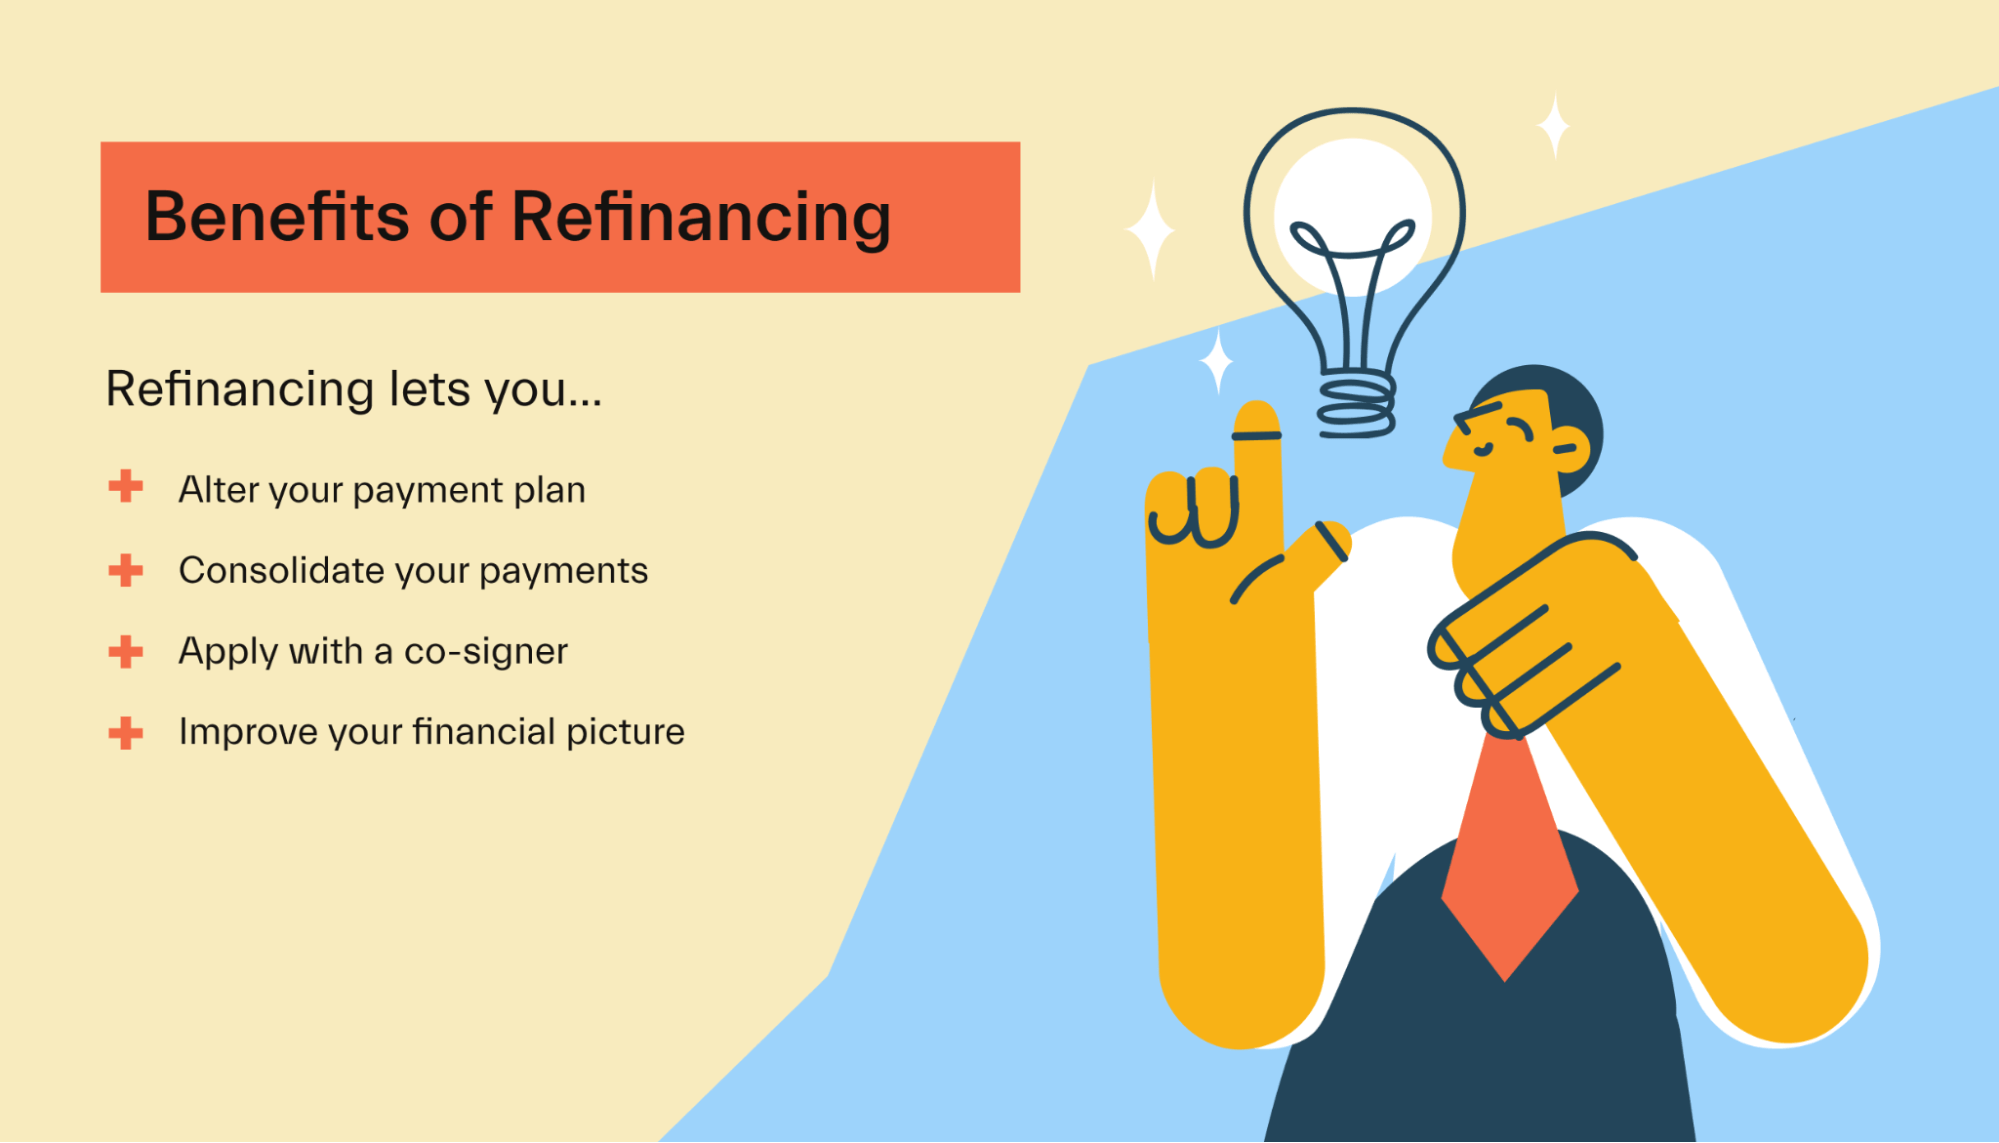 Benefits of refinancing